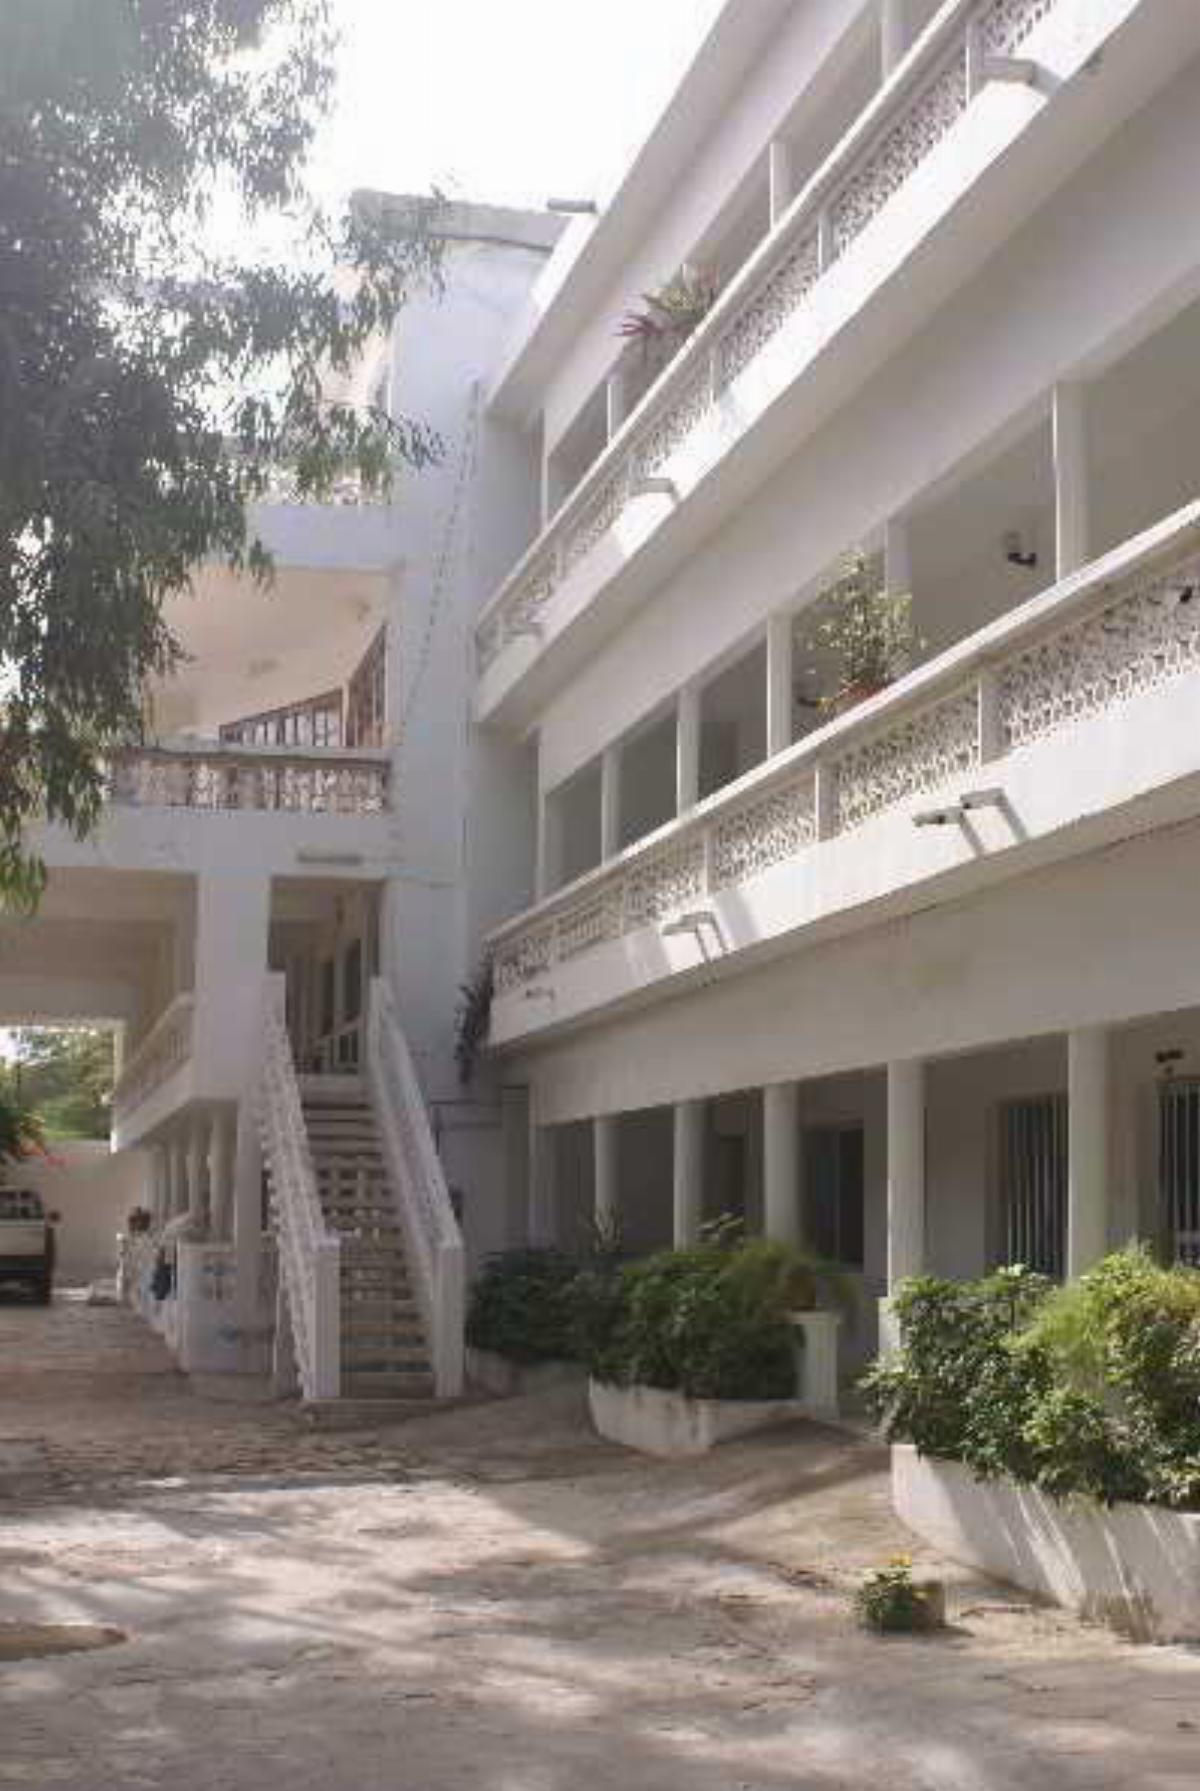 La Voile D' or Hotel Dakar Senegal